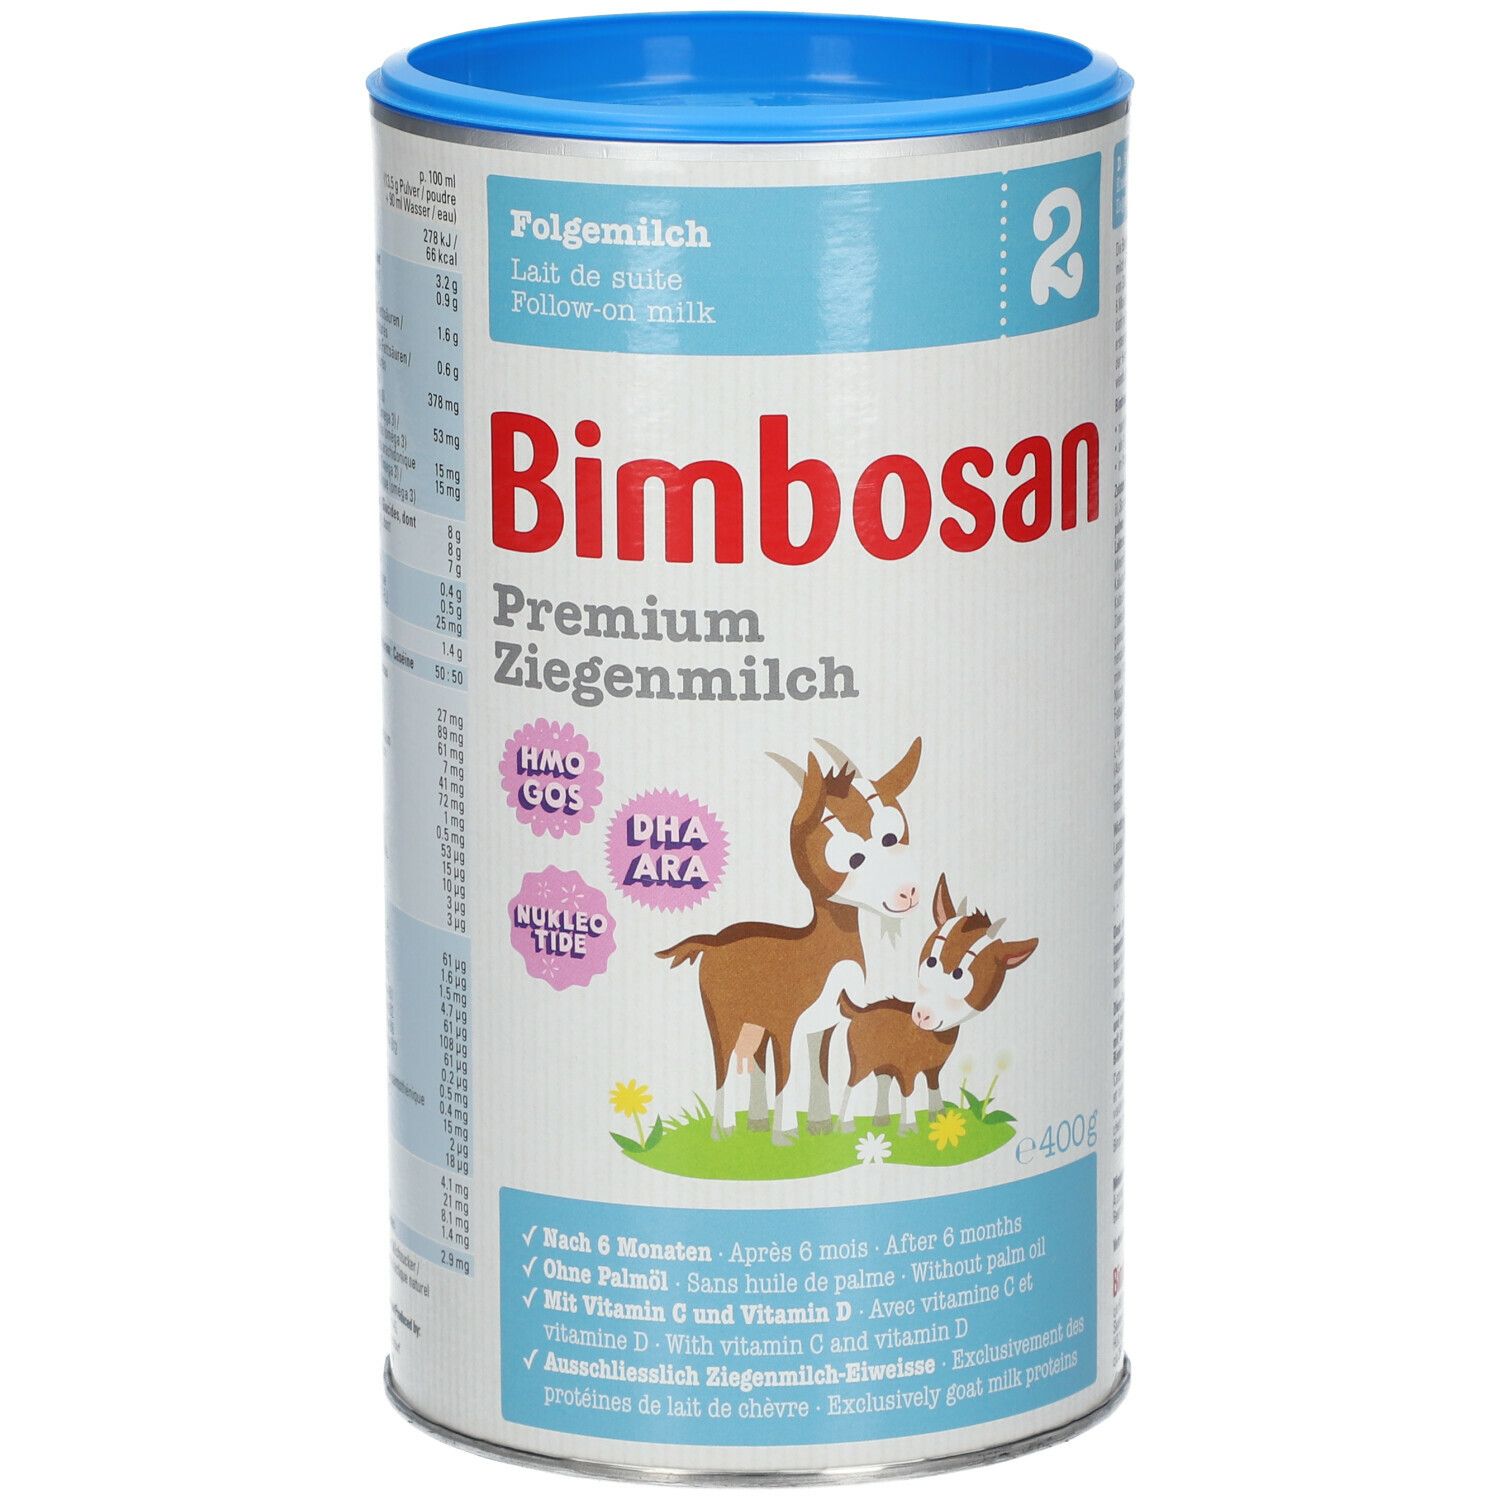 Bimbosan Premium Ziegenmilch 2 Folgemilch